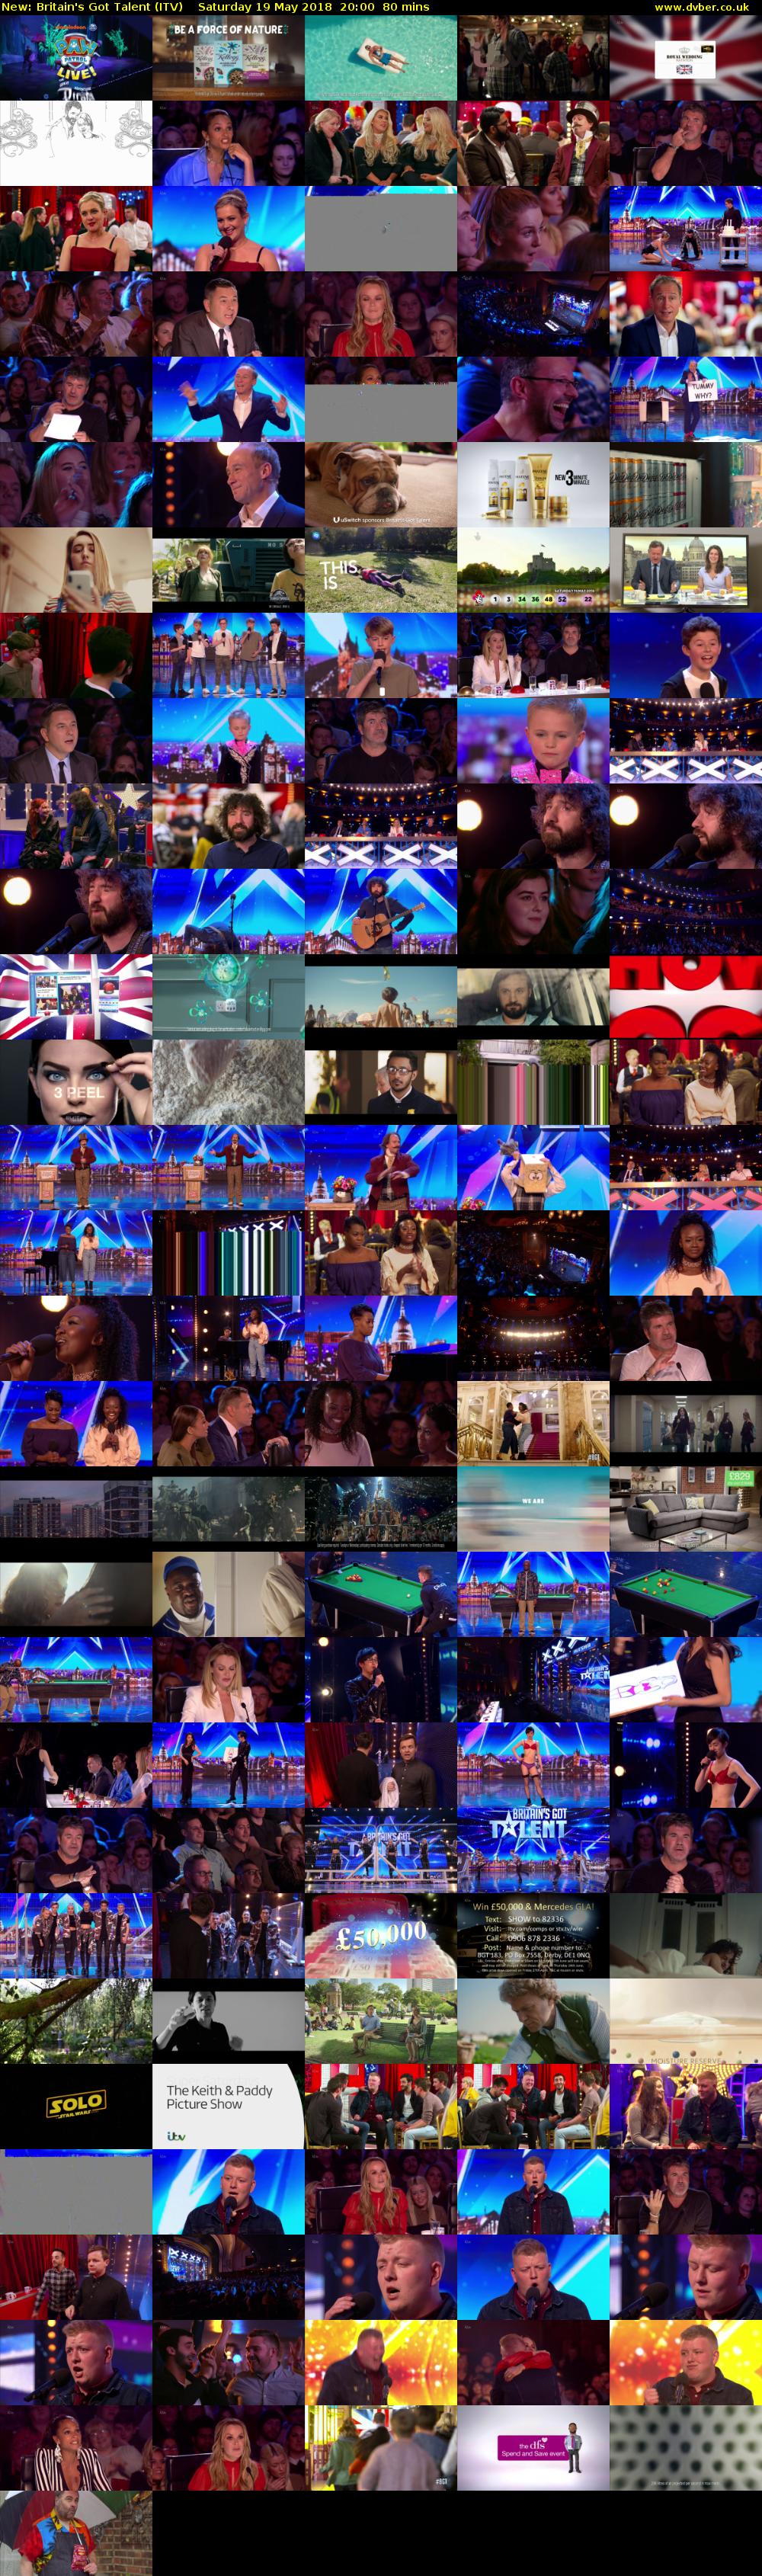 Britain's Got Talent (ITV) Saturday 19 May 2018 20:00 - 21:20